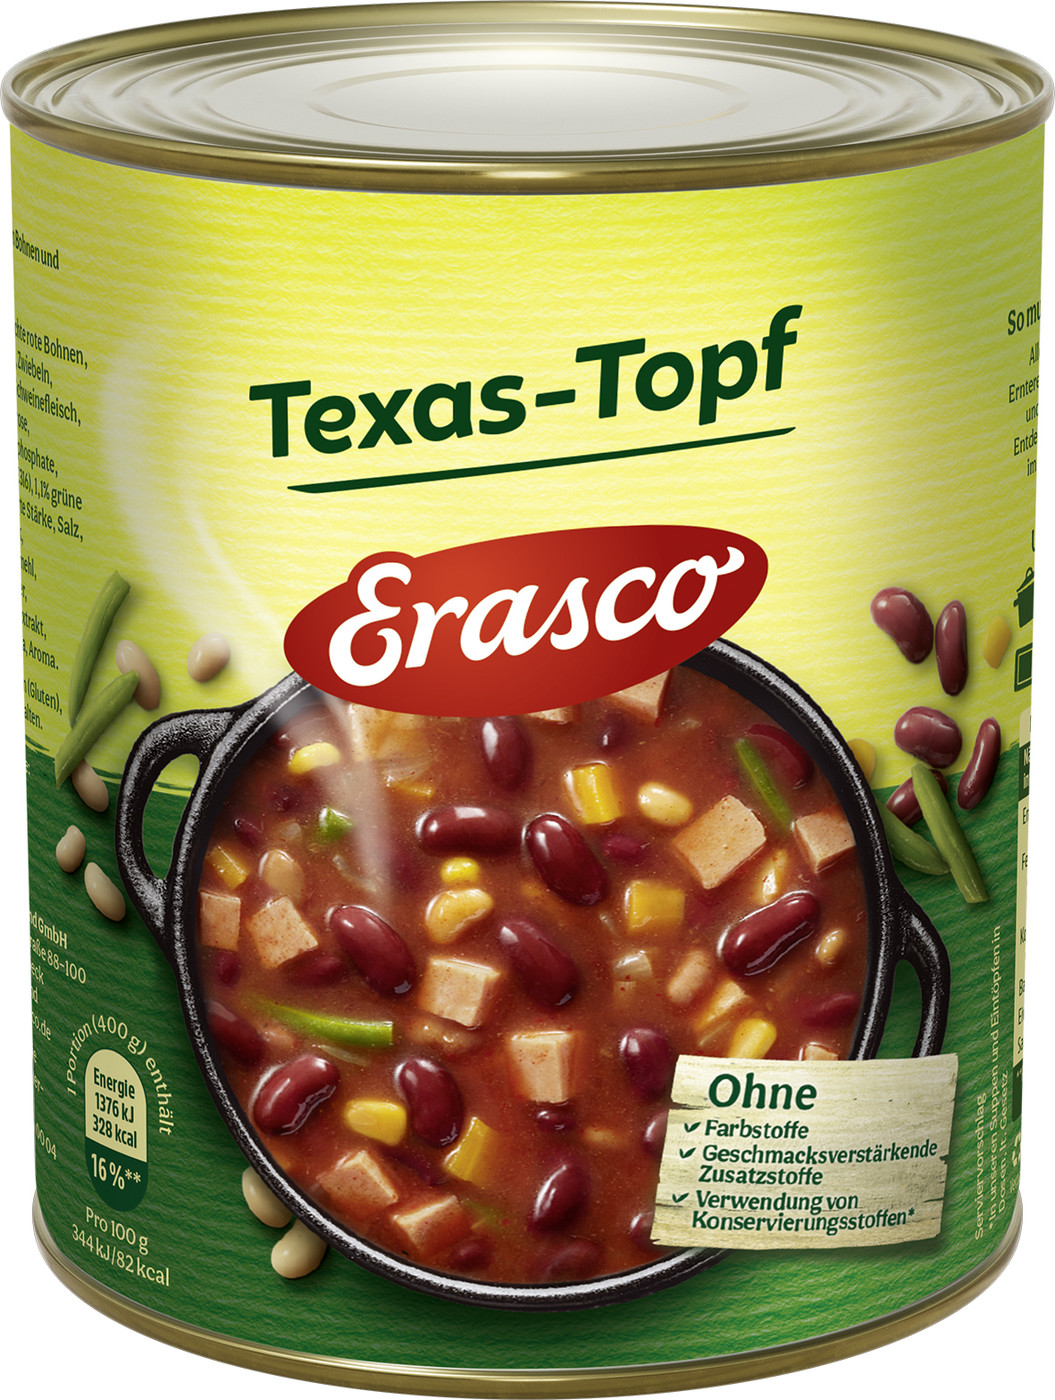 Erasco Texas-Topf 800G